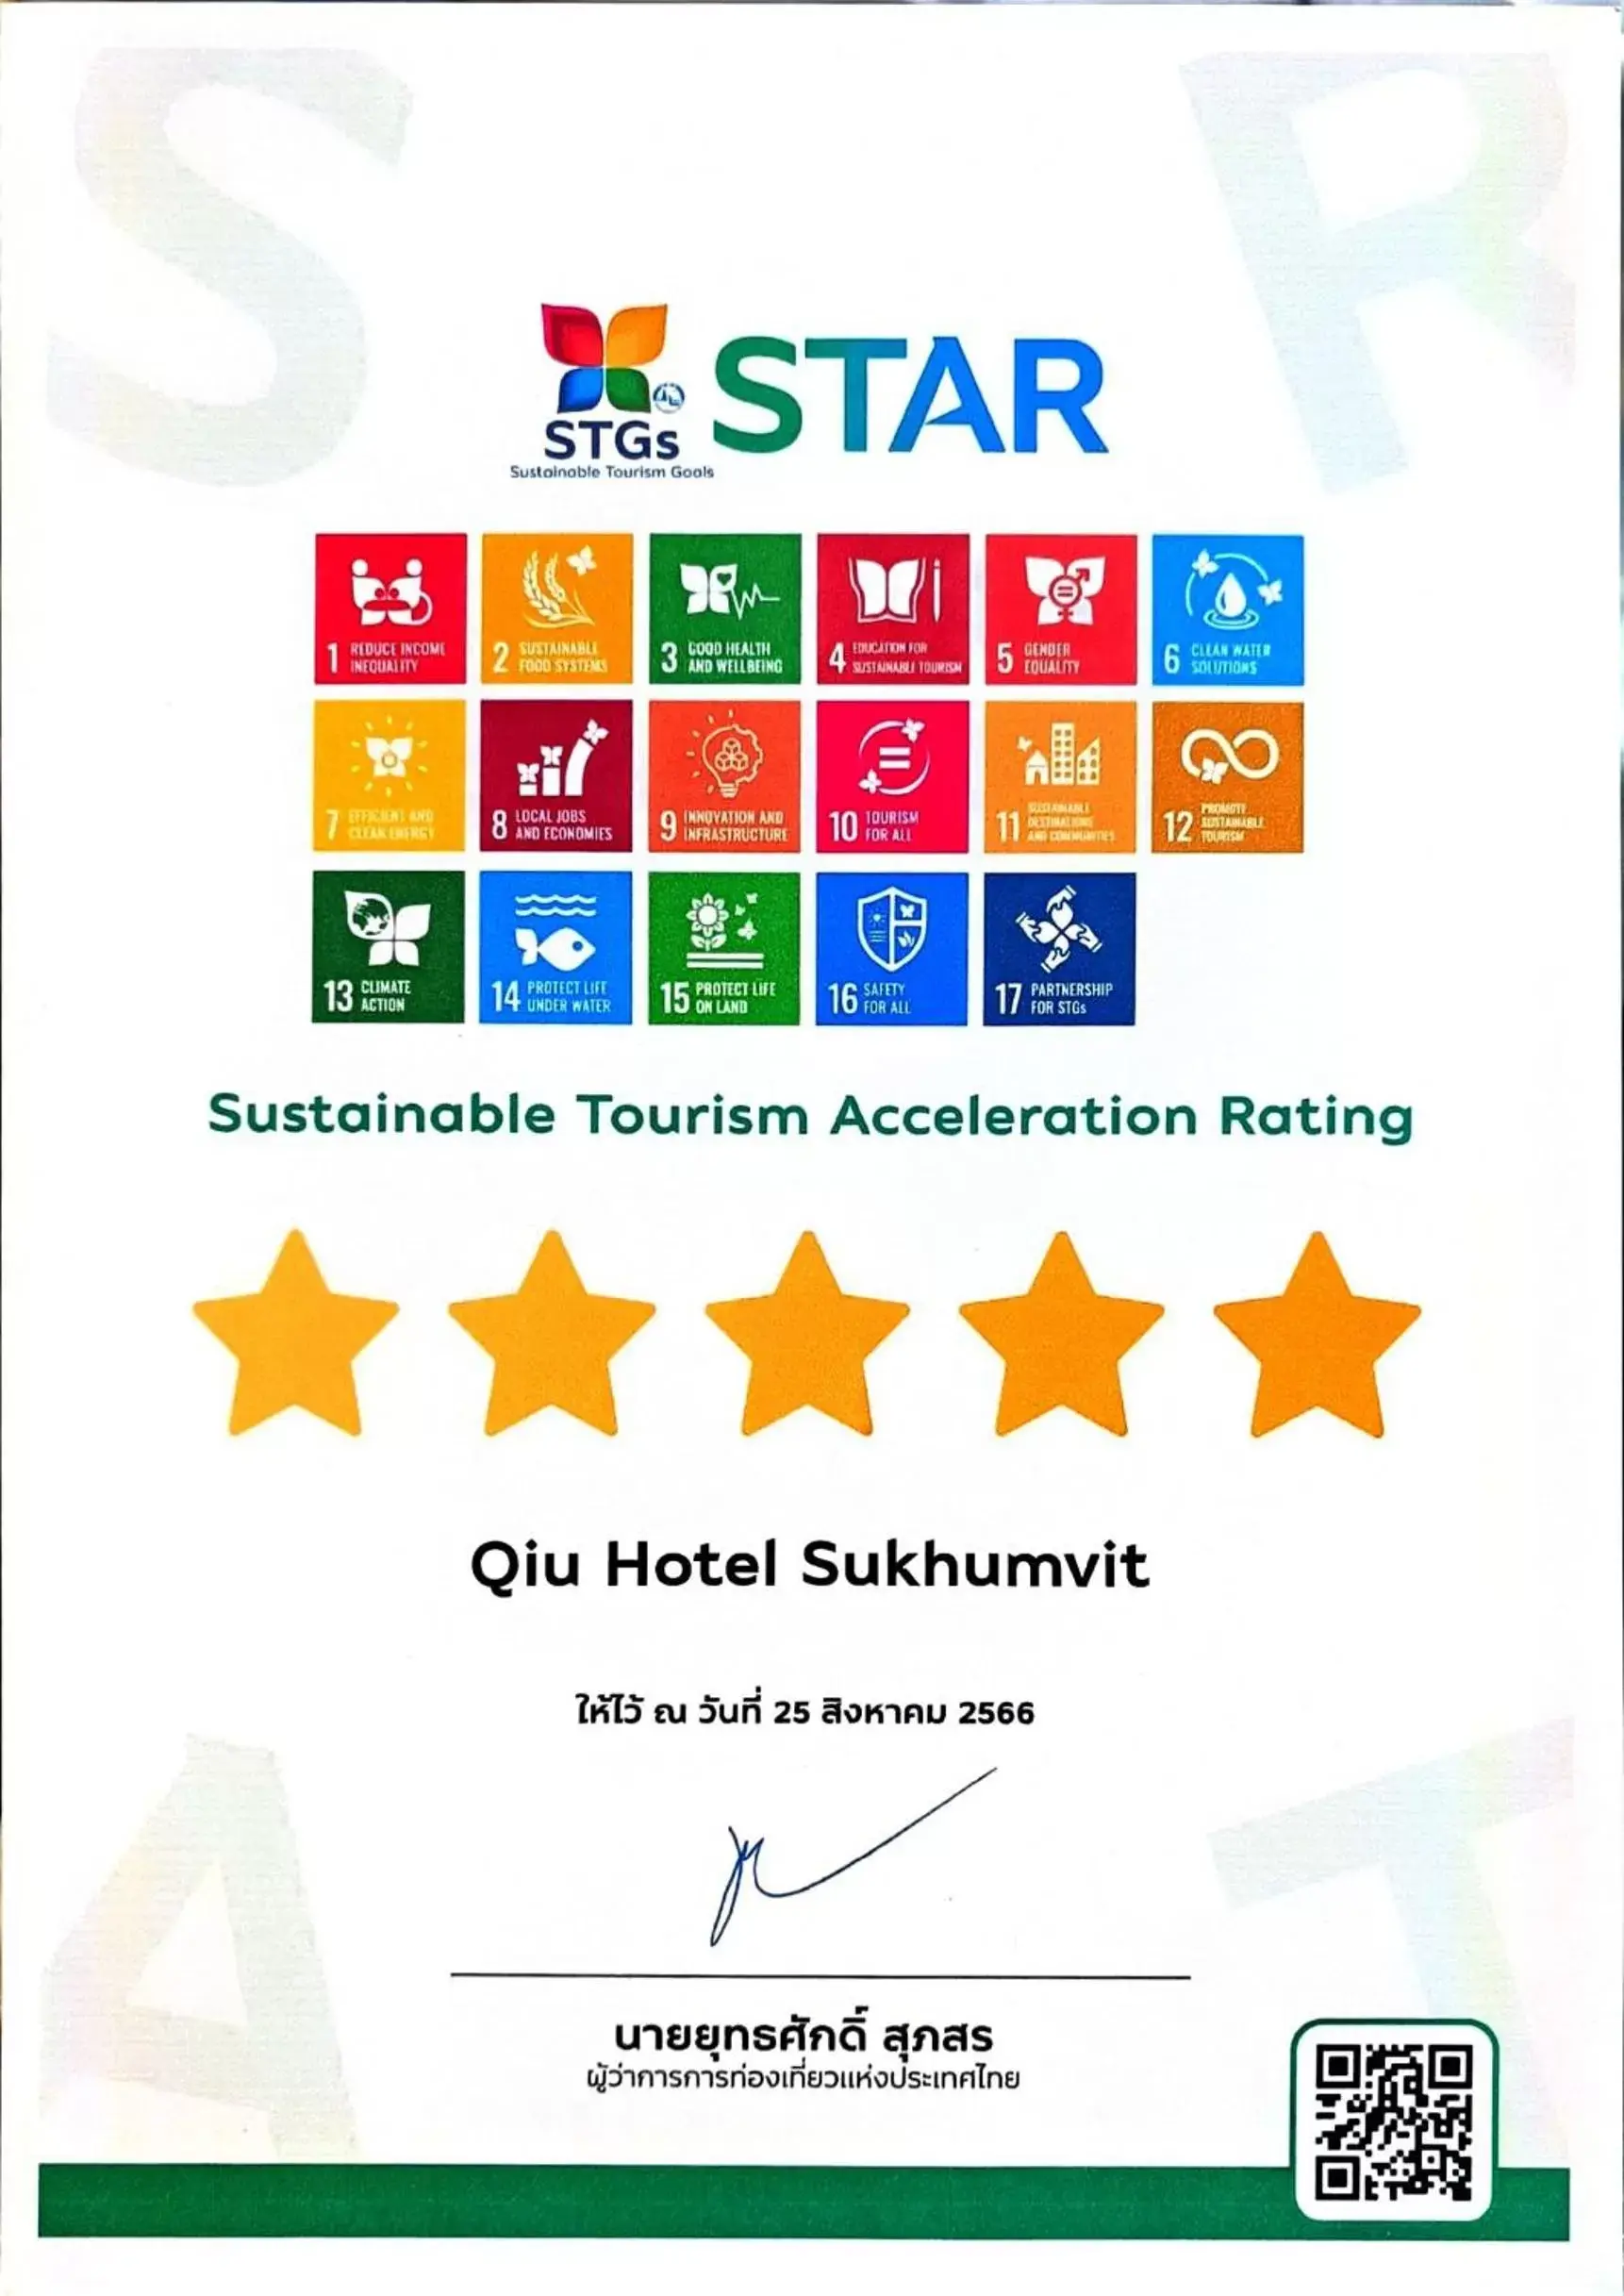 Certificate/Award in Qiu Hotel Sukhumvit SHA Plus